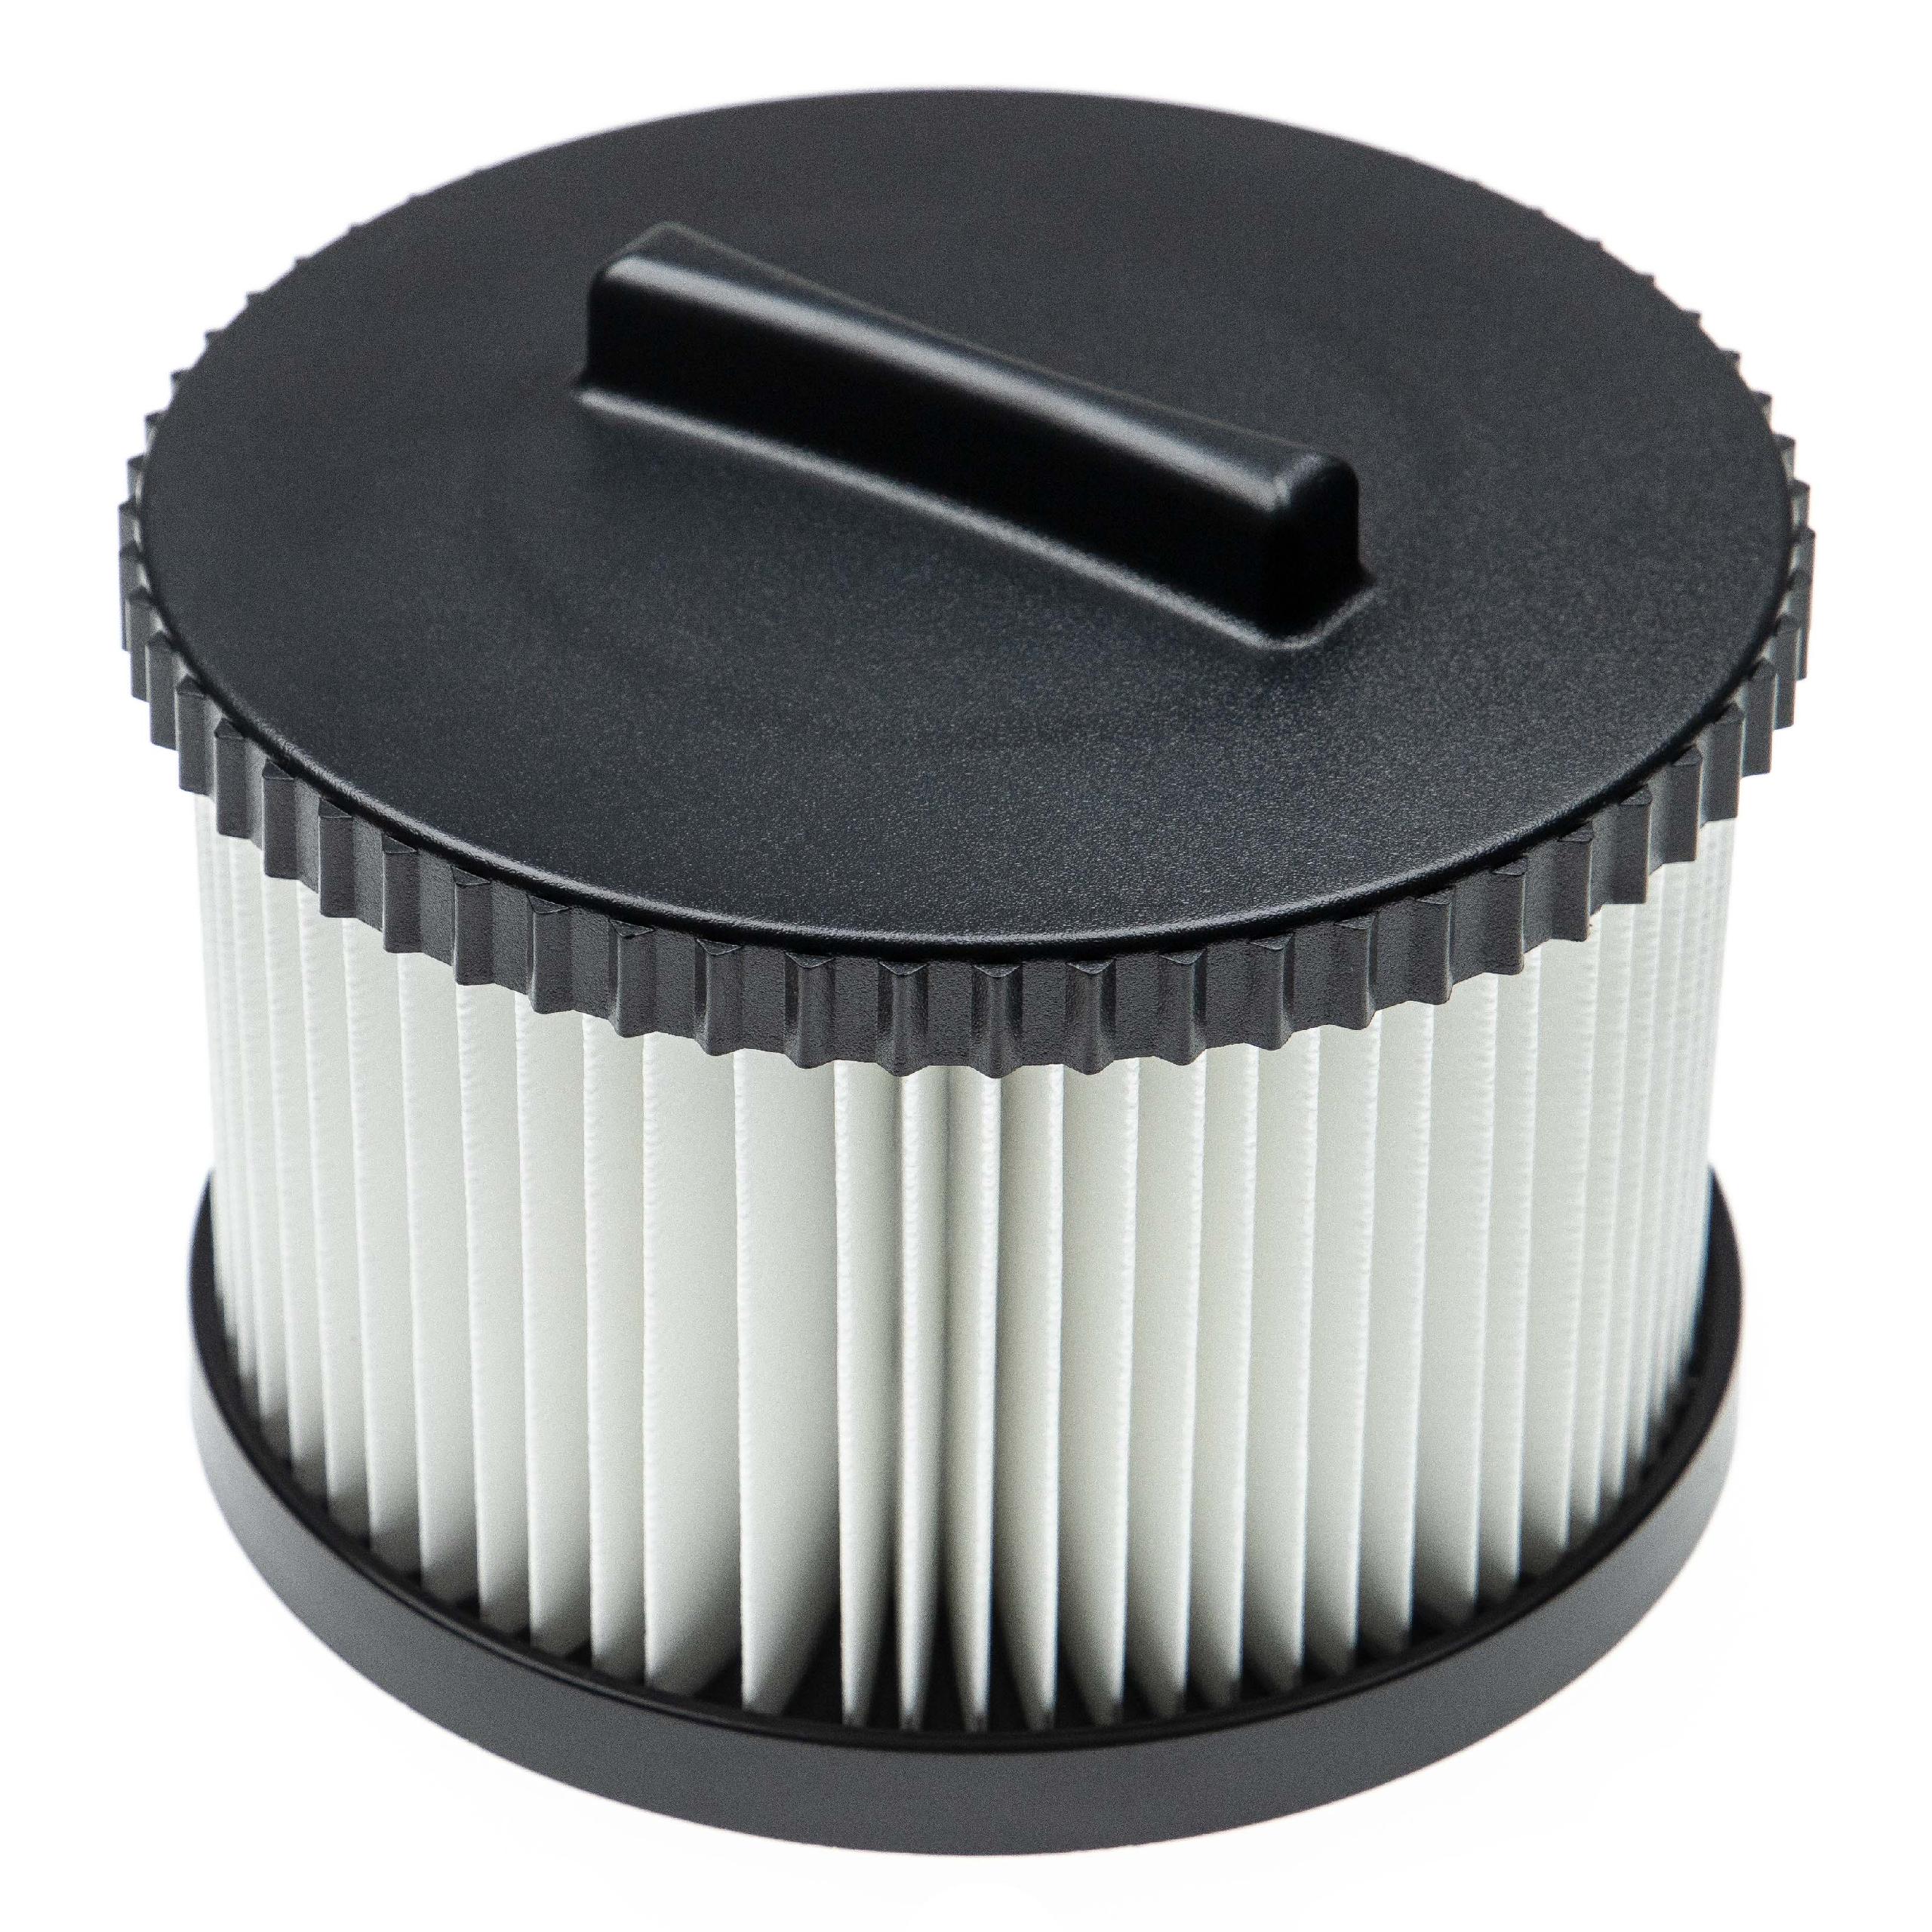 Filtre remplace Dewalt DWV9330 pour aspirateur - filtre HEPA